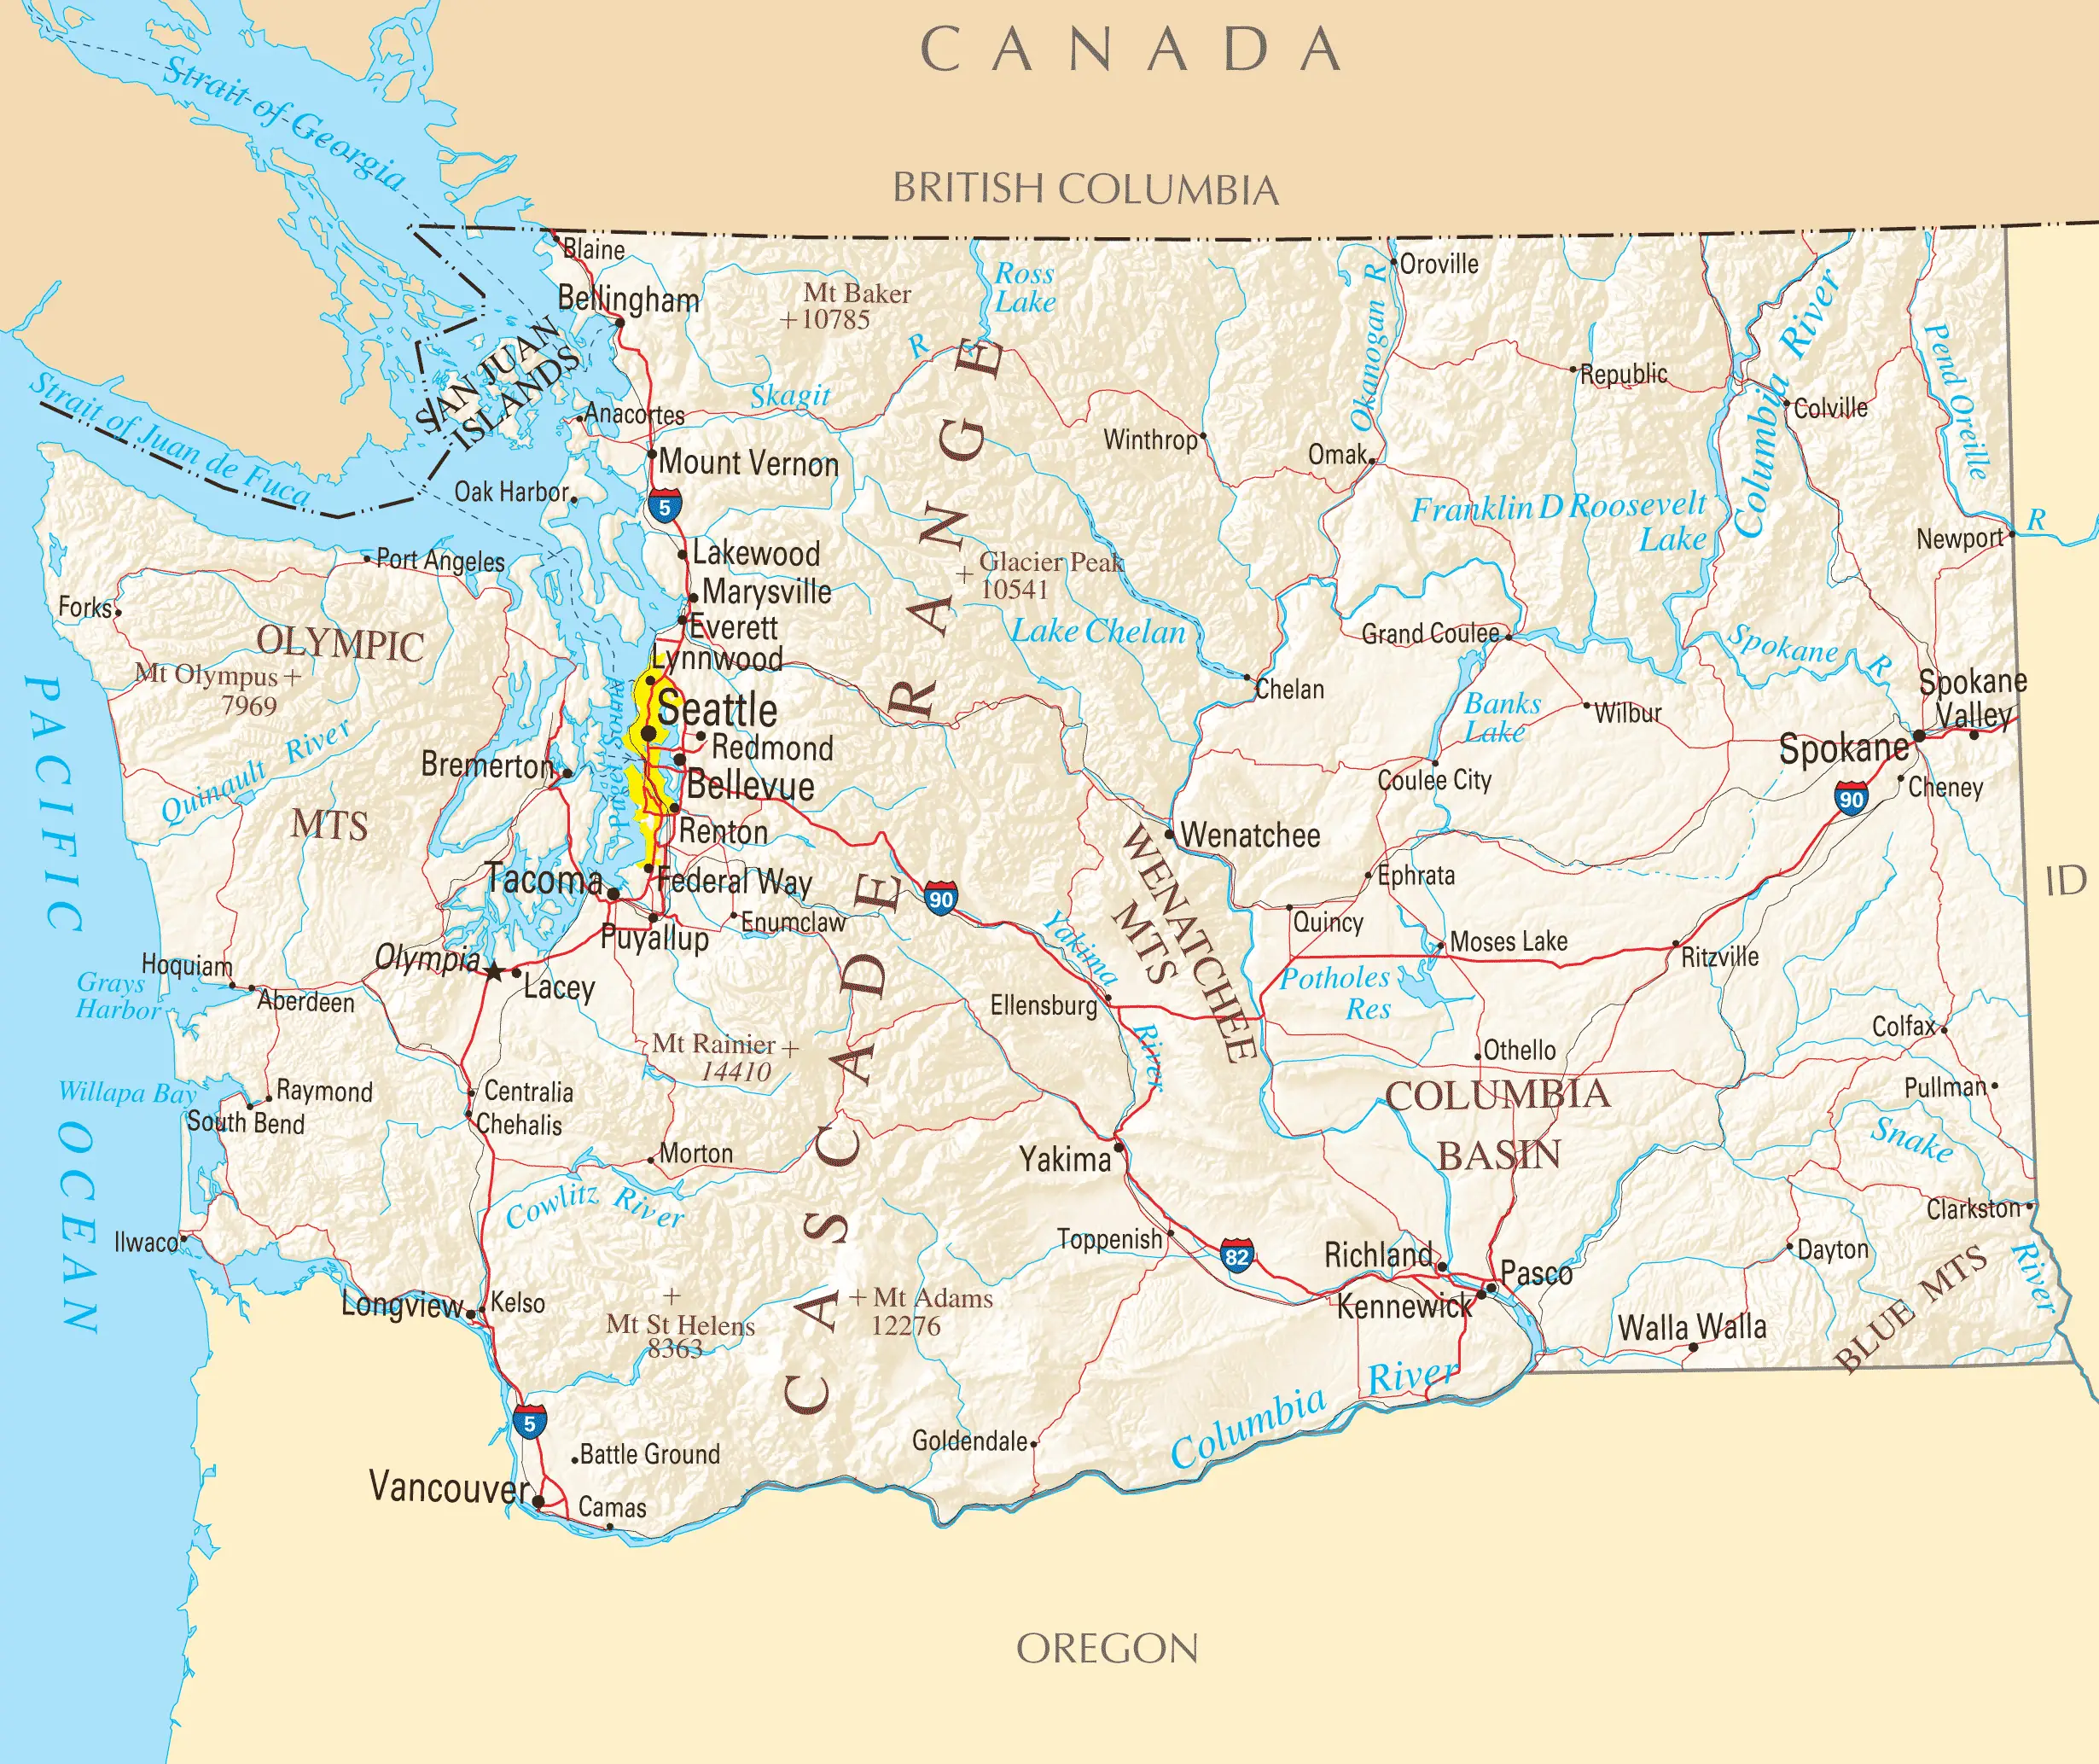 Washington Reference Map - MapSof.net